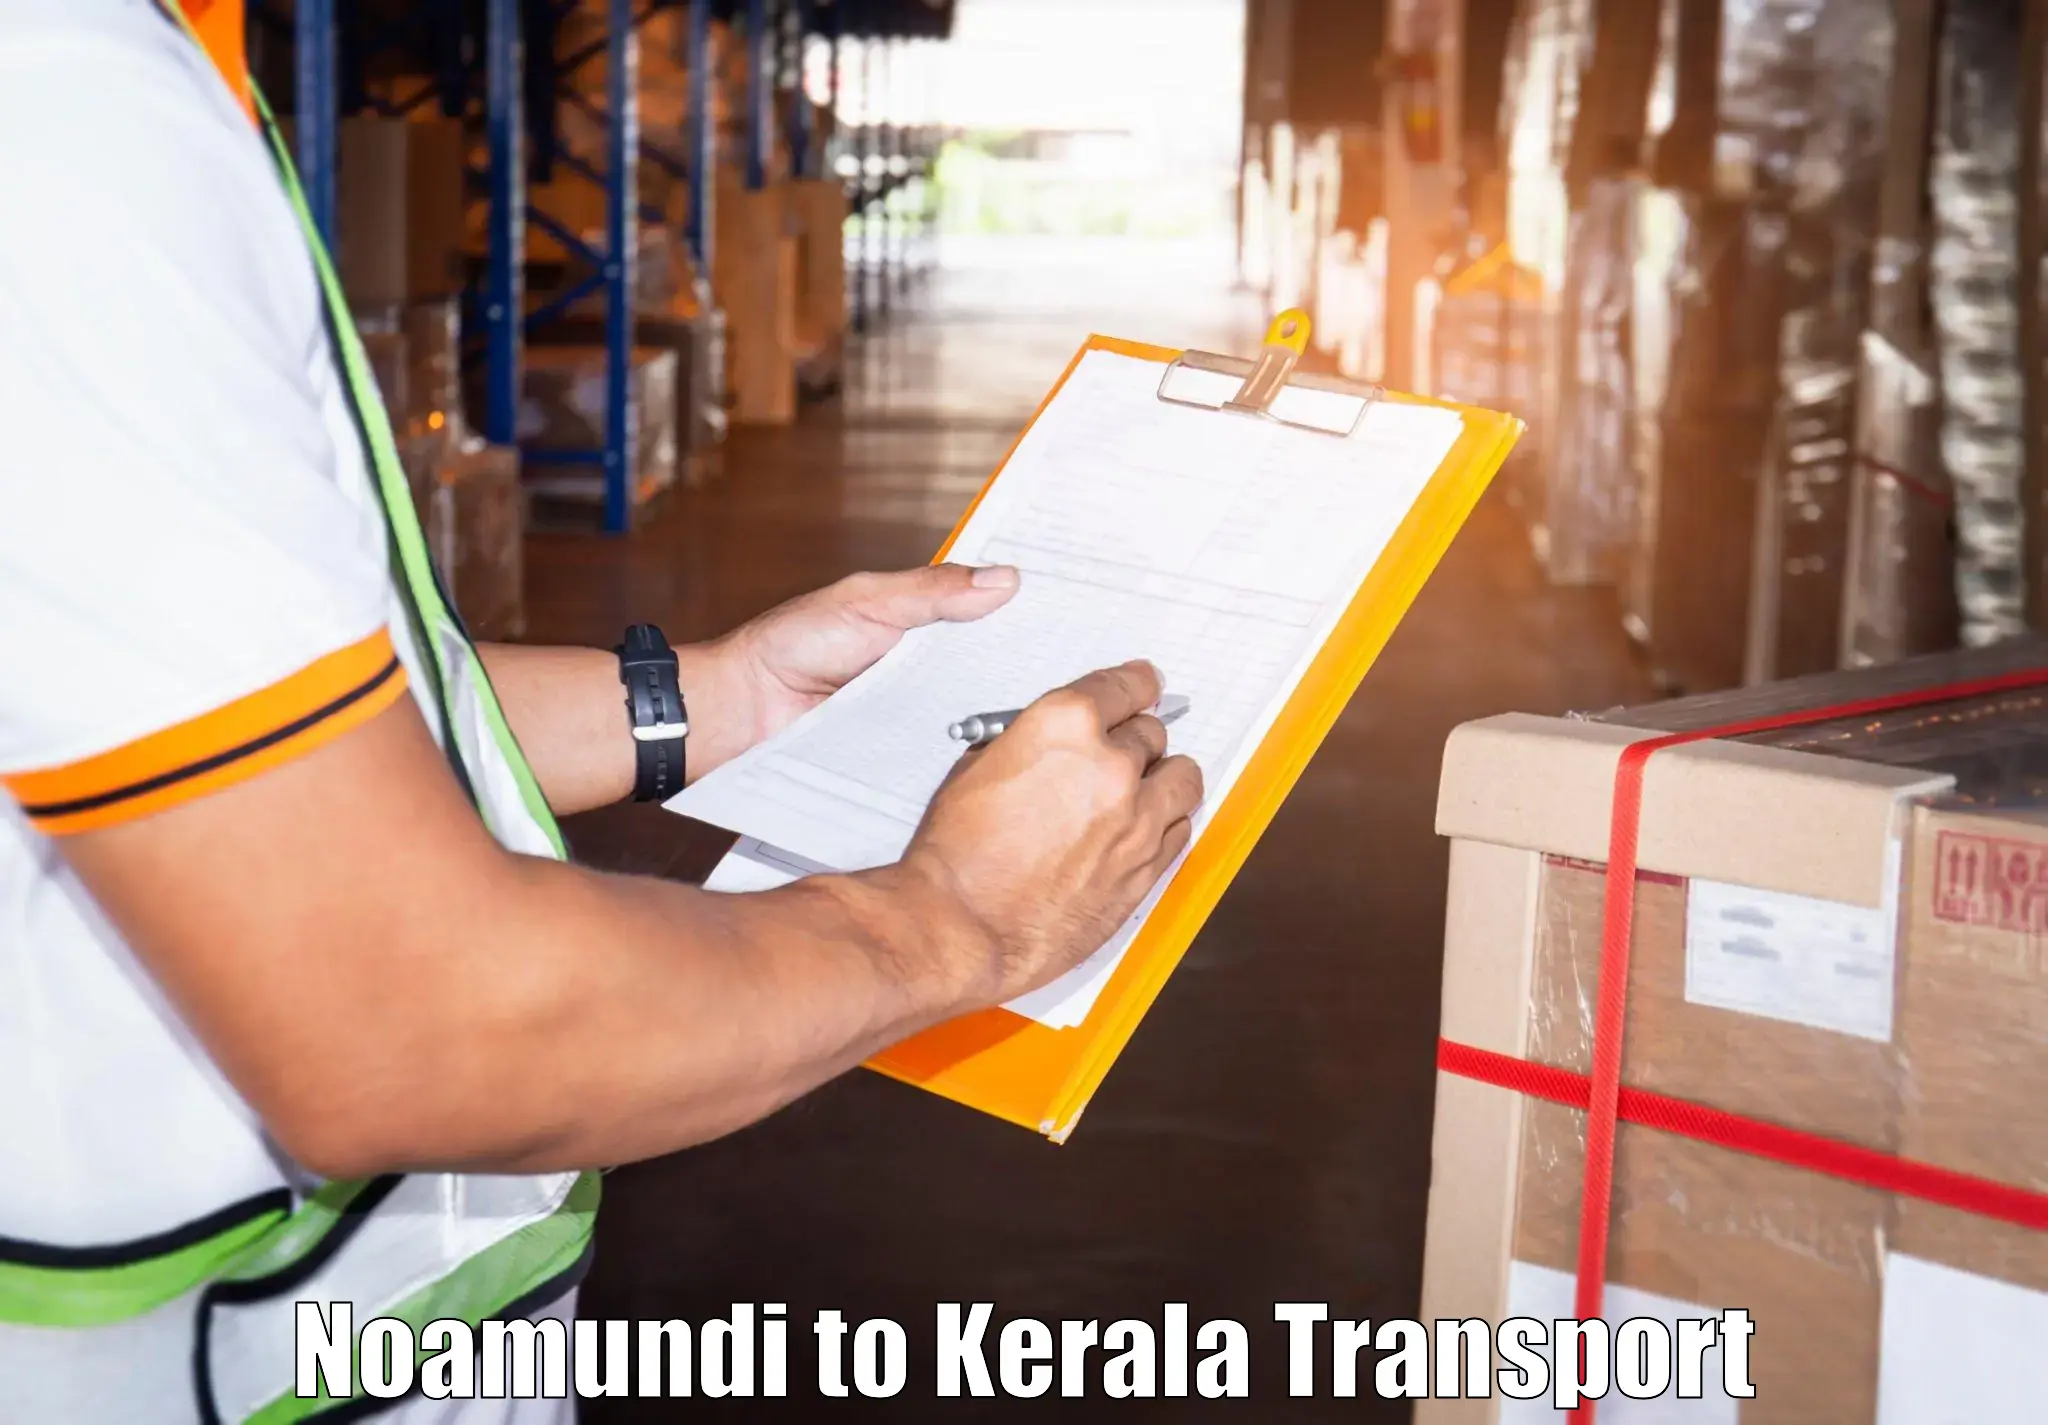 Transport in sharing Noamundi to Kayamkulam